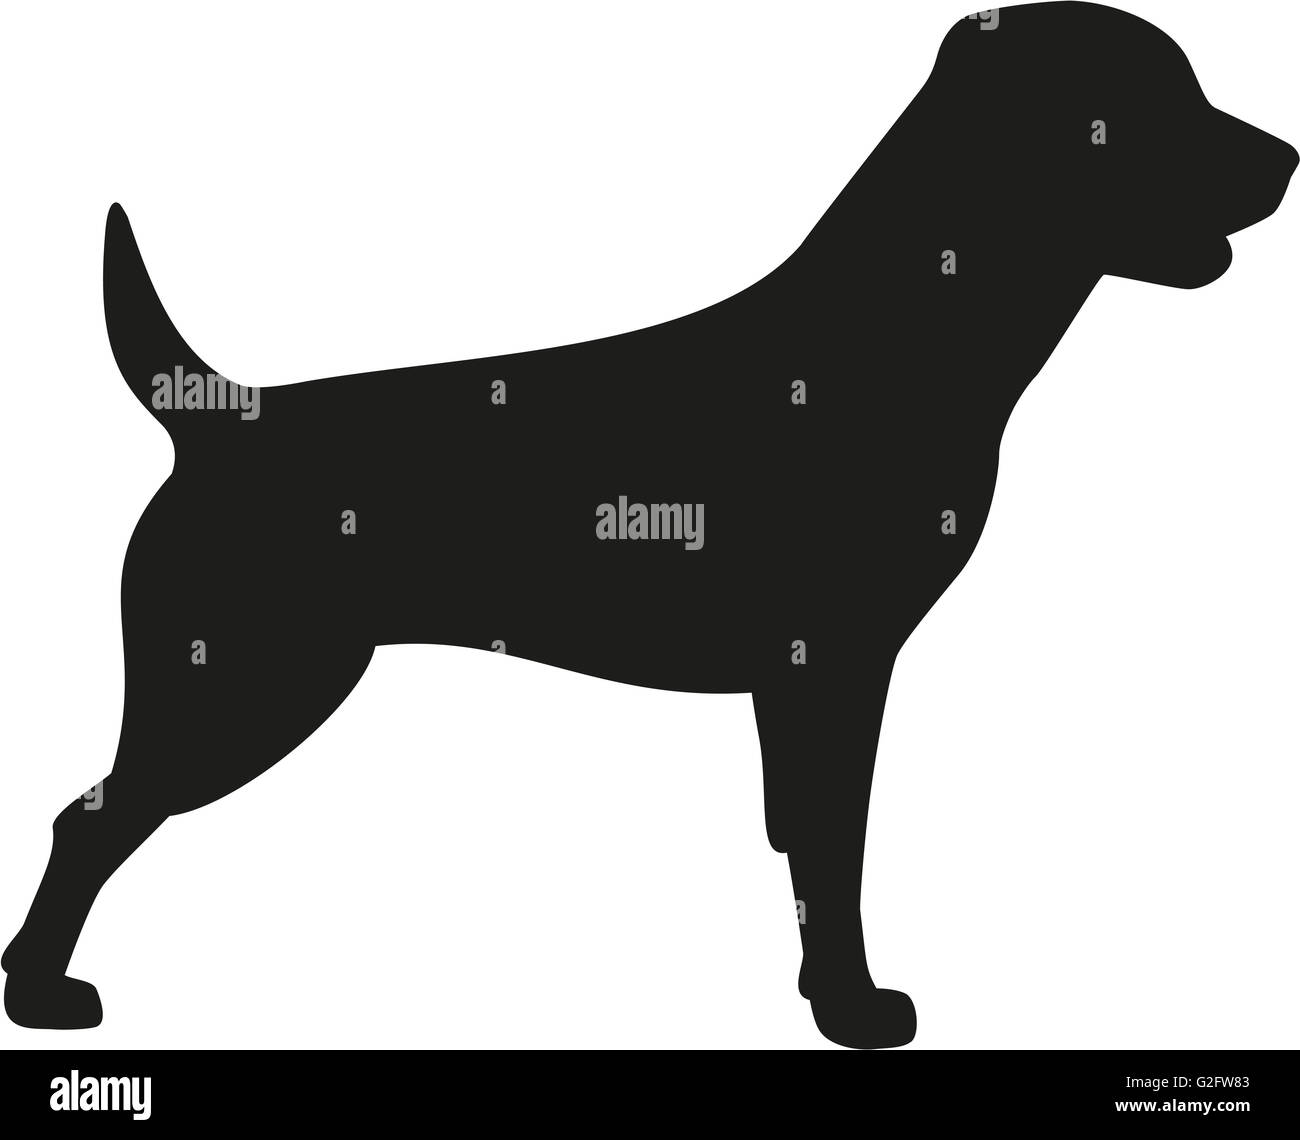 Rottweiler dog icon Stock Photo